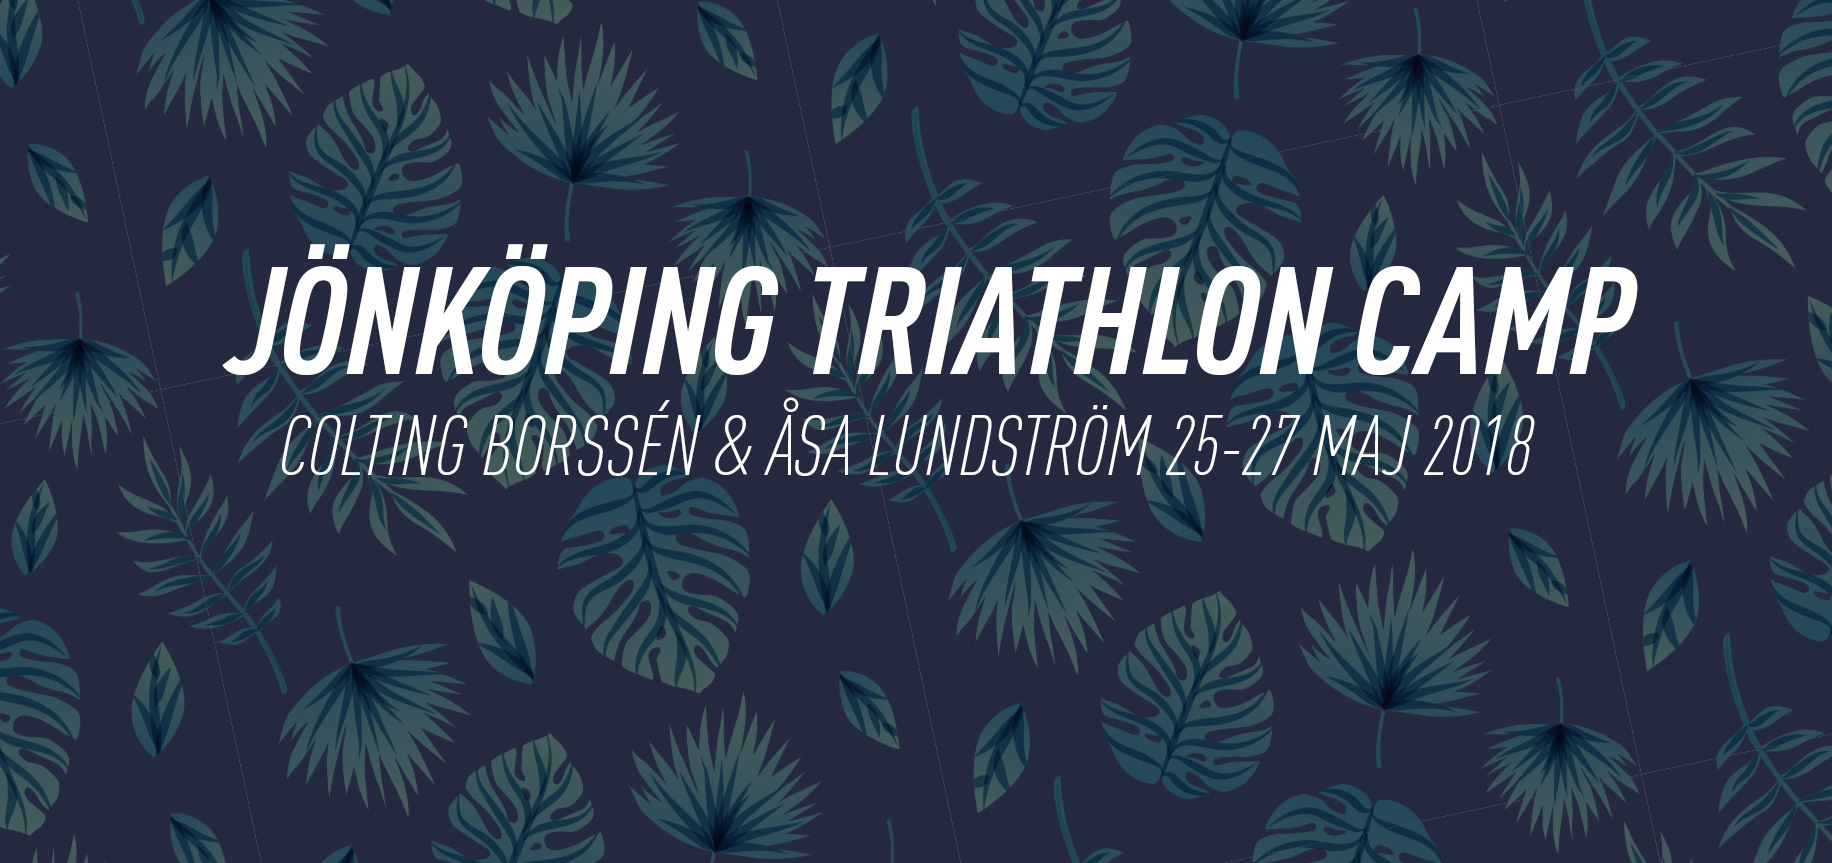 Triathlonläger i Jönköping